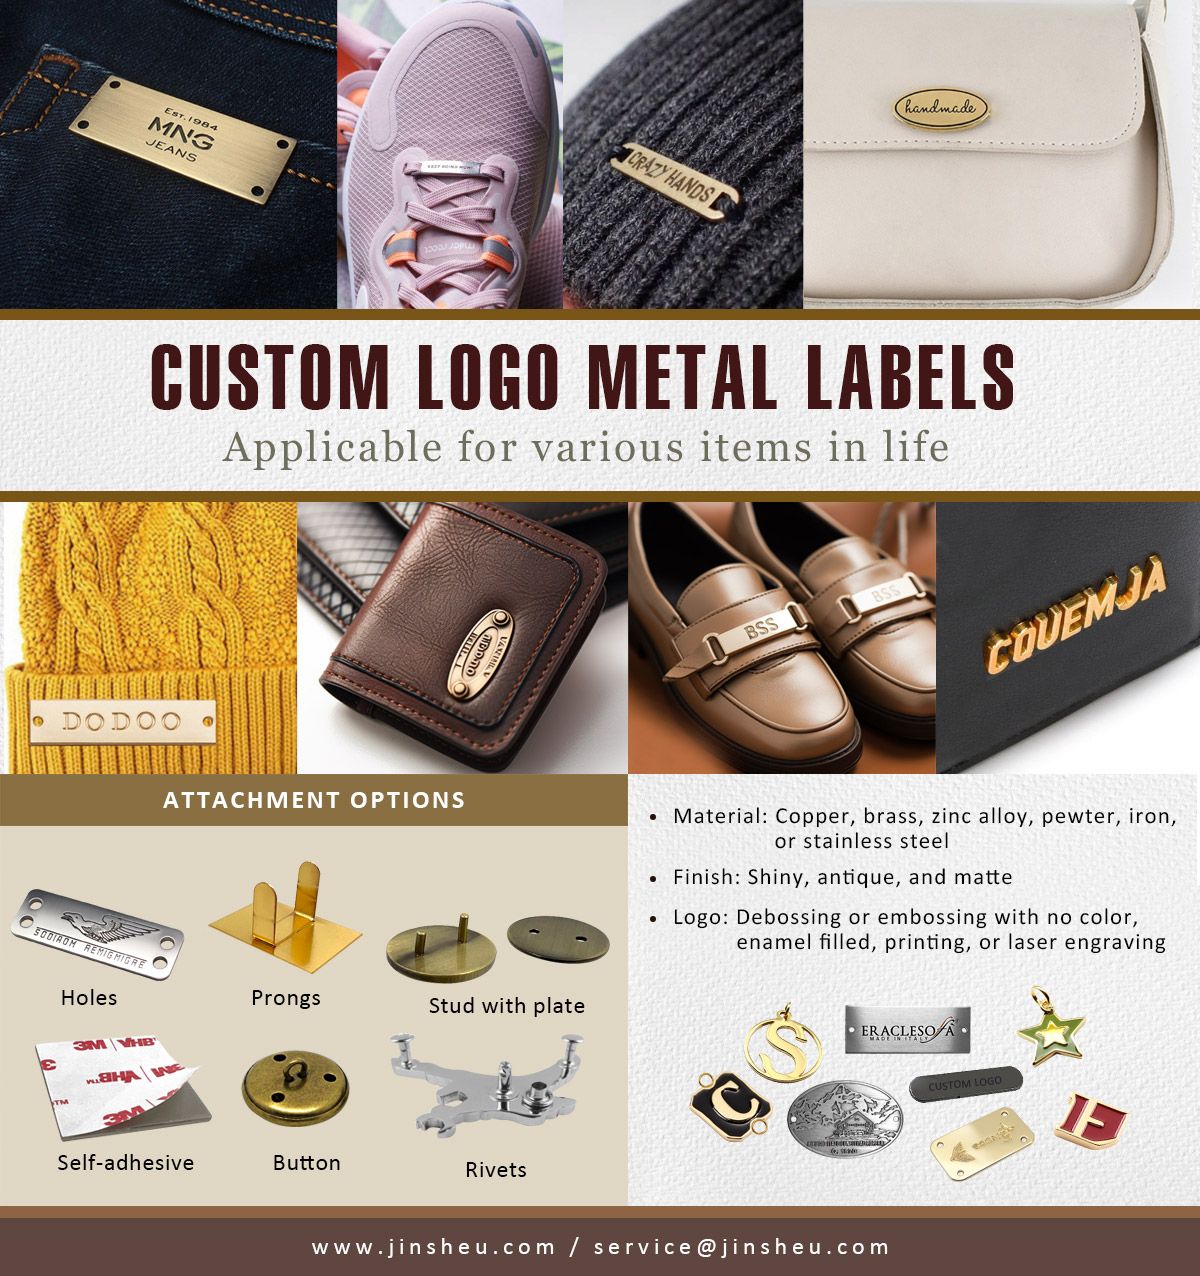 Etiquetas de metal personalizadas com logotipos de marca